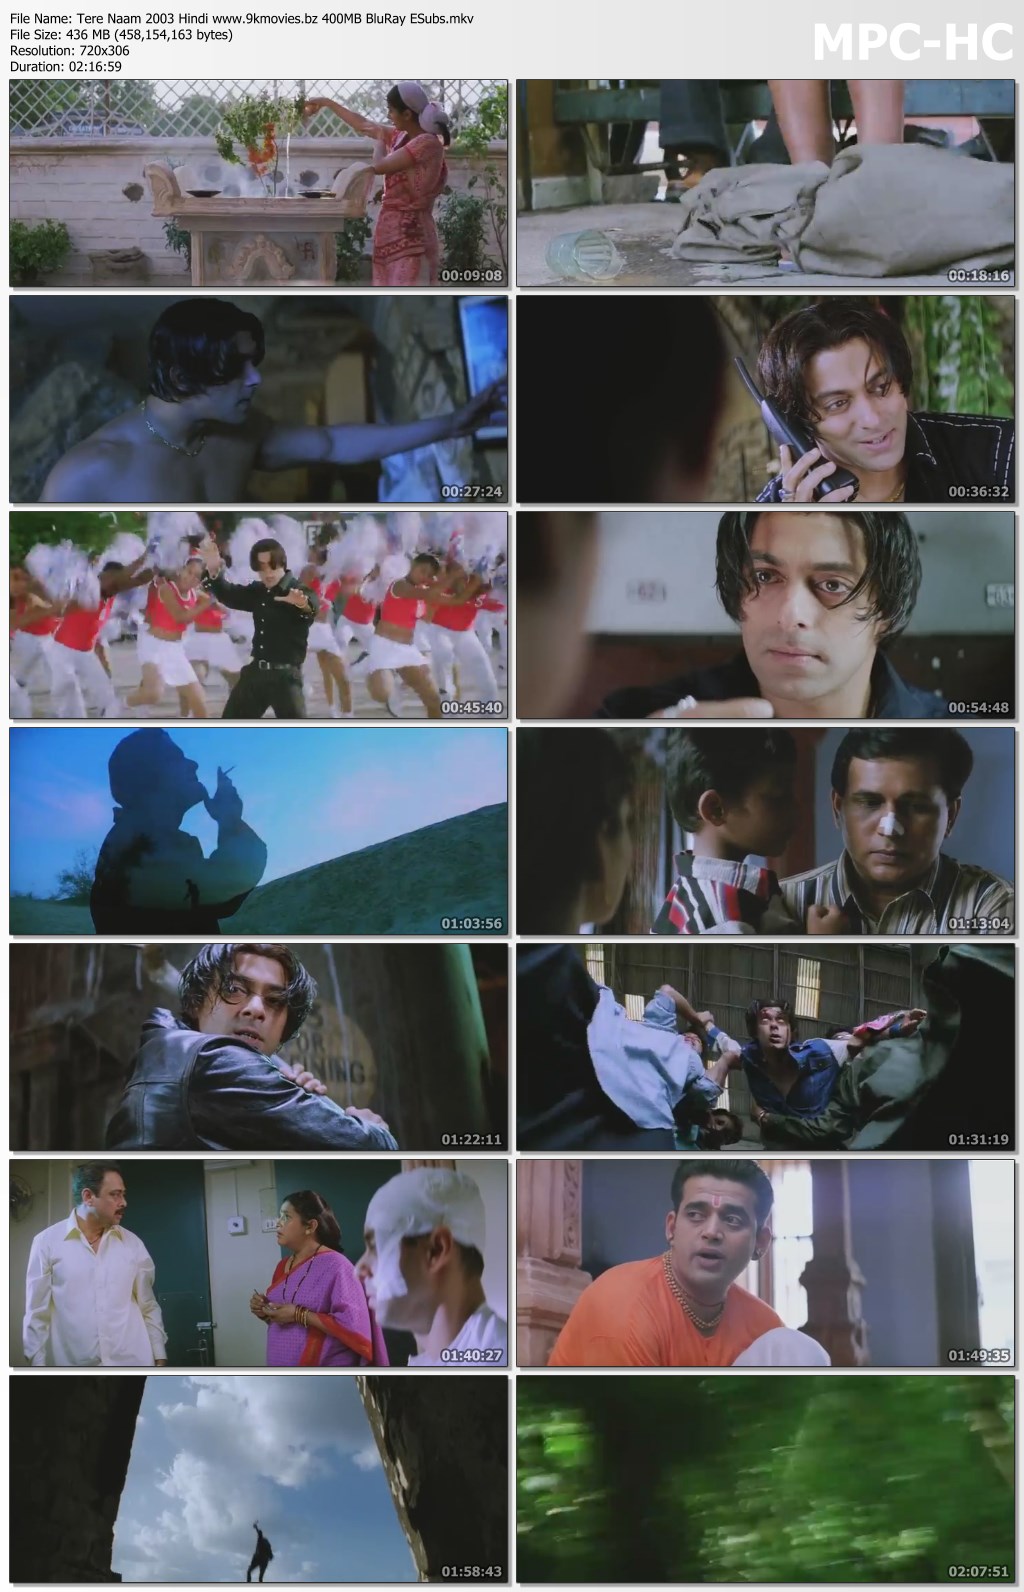 hindi movies 2003